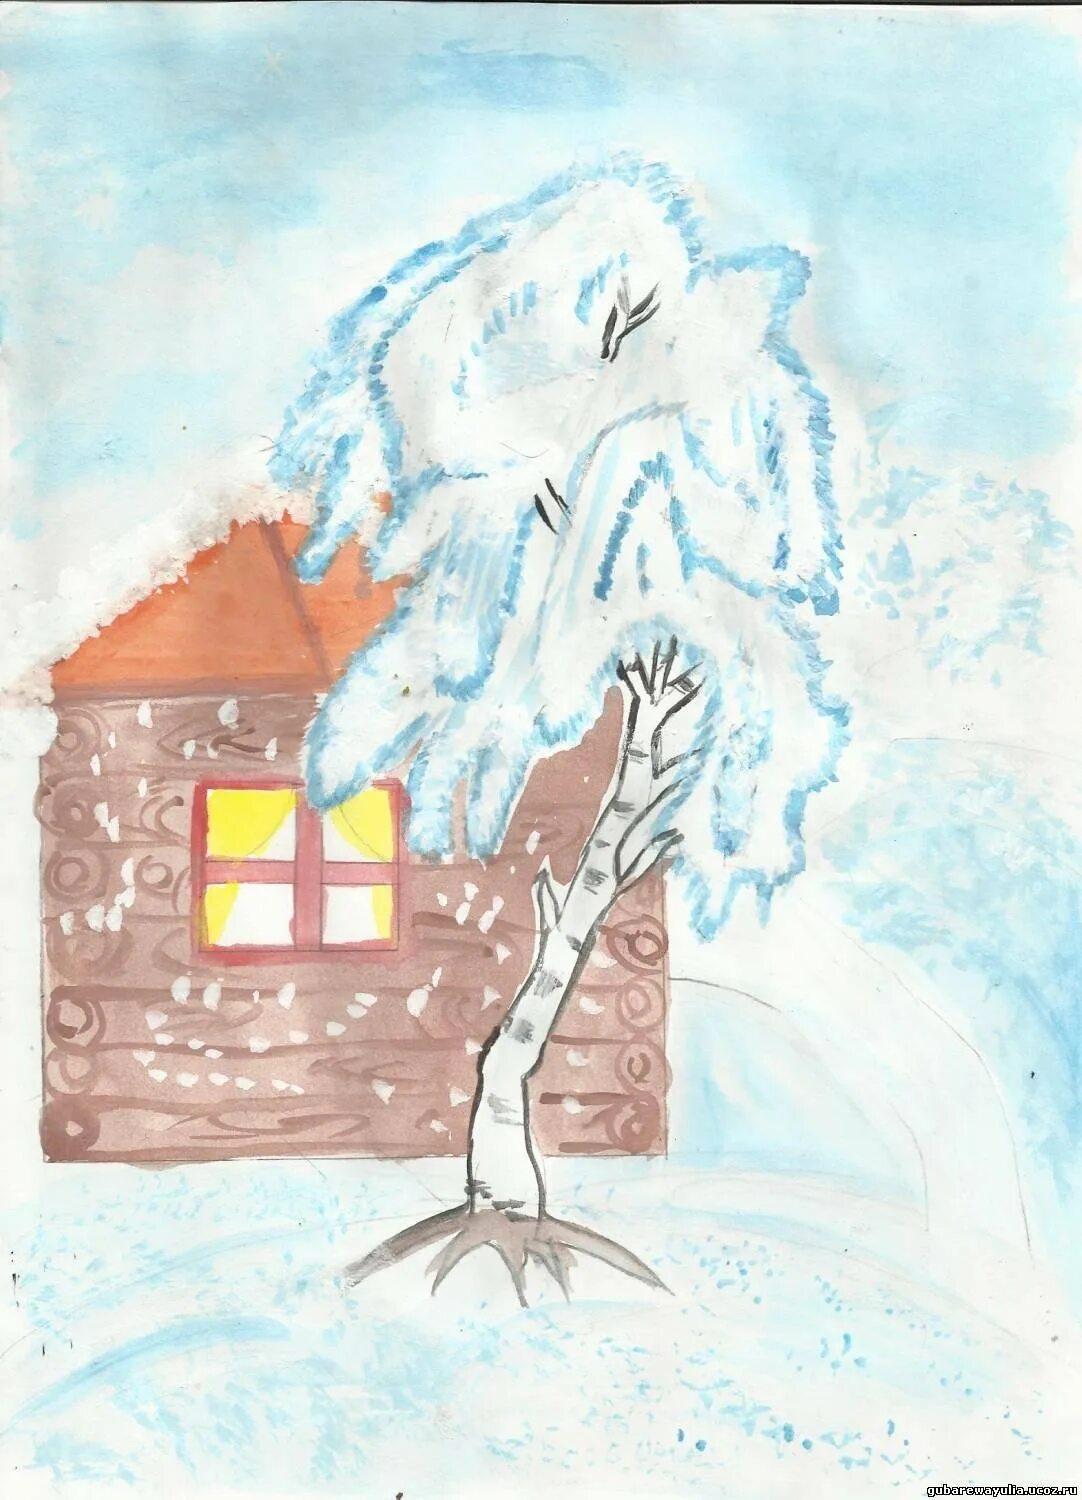 Иллюстрация к стихотворению Есенина белая береза. Рисунок к стихотворению Есенина береза. Рисунок к стиху Есенина белая береза. Иллюстрация к стиху береза Есенин.